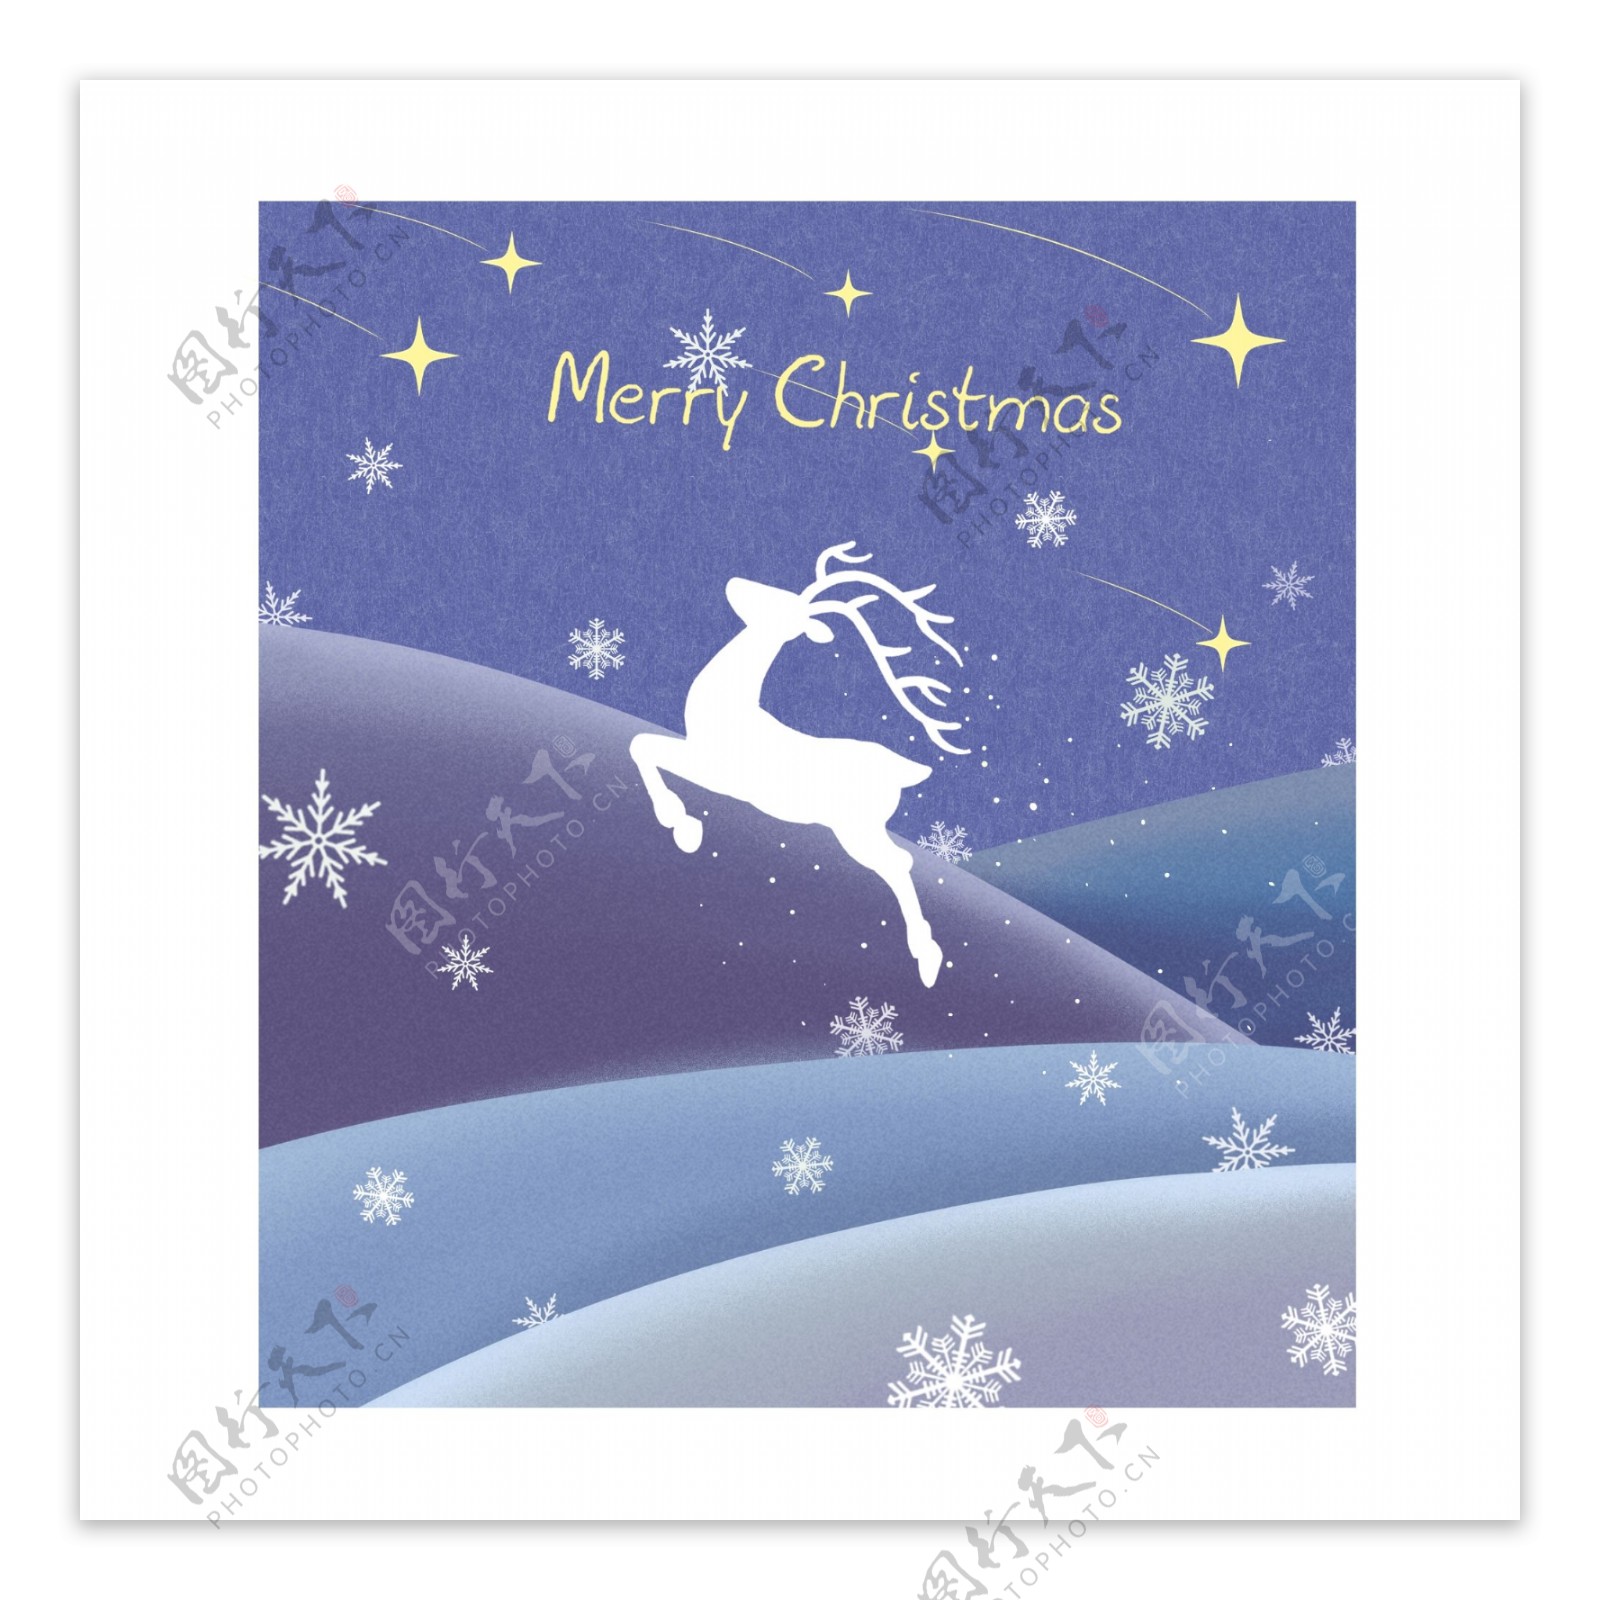 手绘圣诞节邮票驯鹿雪花蓝色夜景贴纸可商用